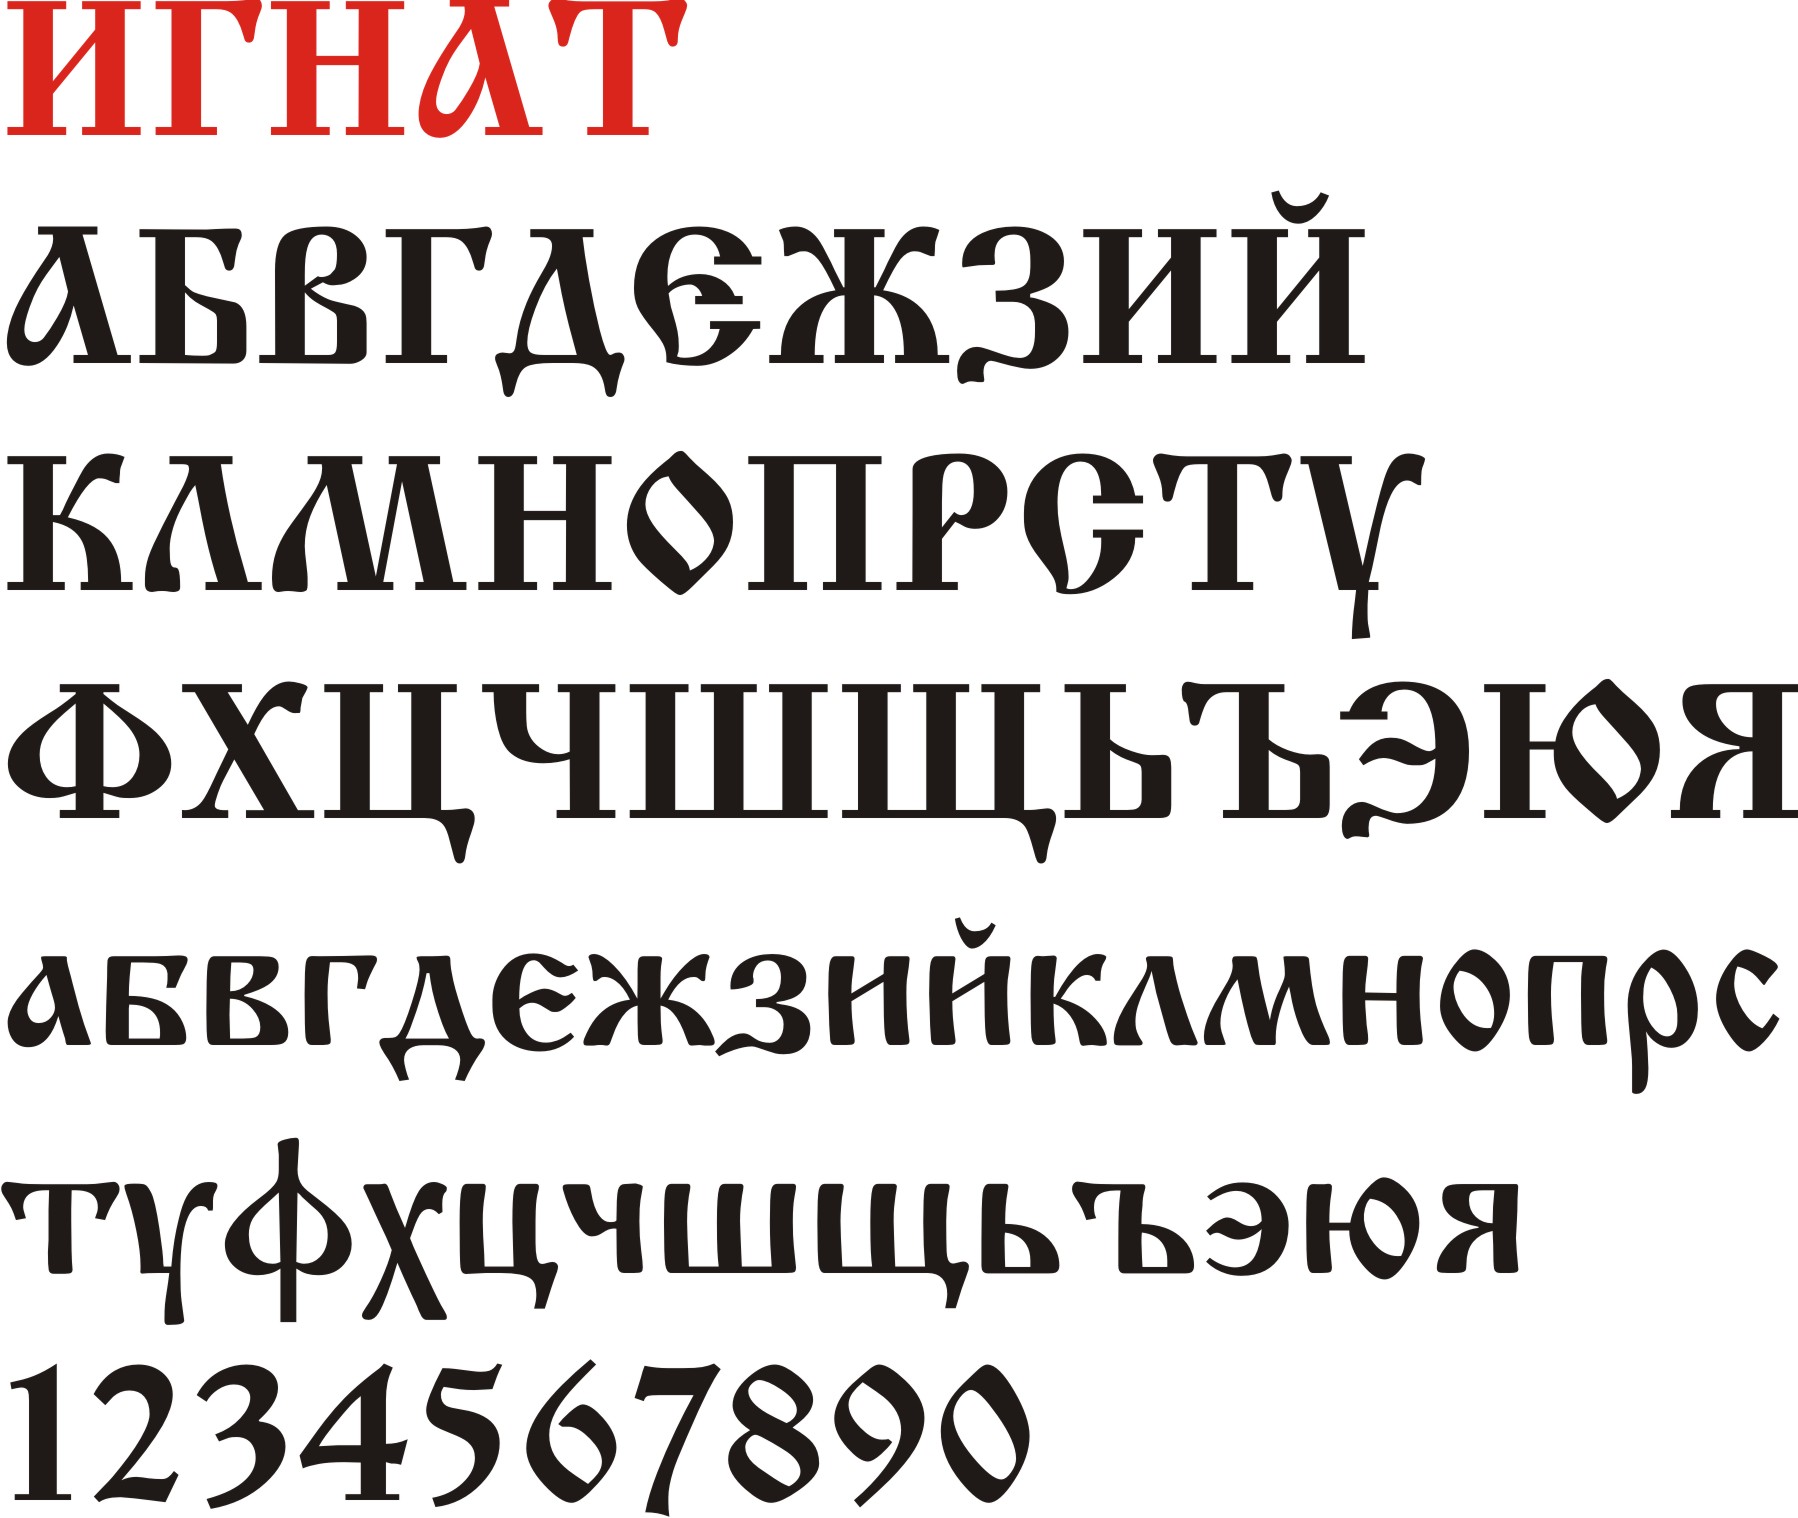 Шрифты для телеграмма на русском языке красивые фото 93